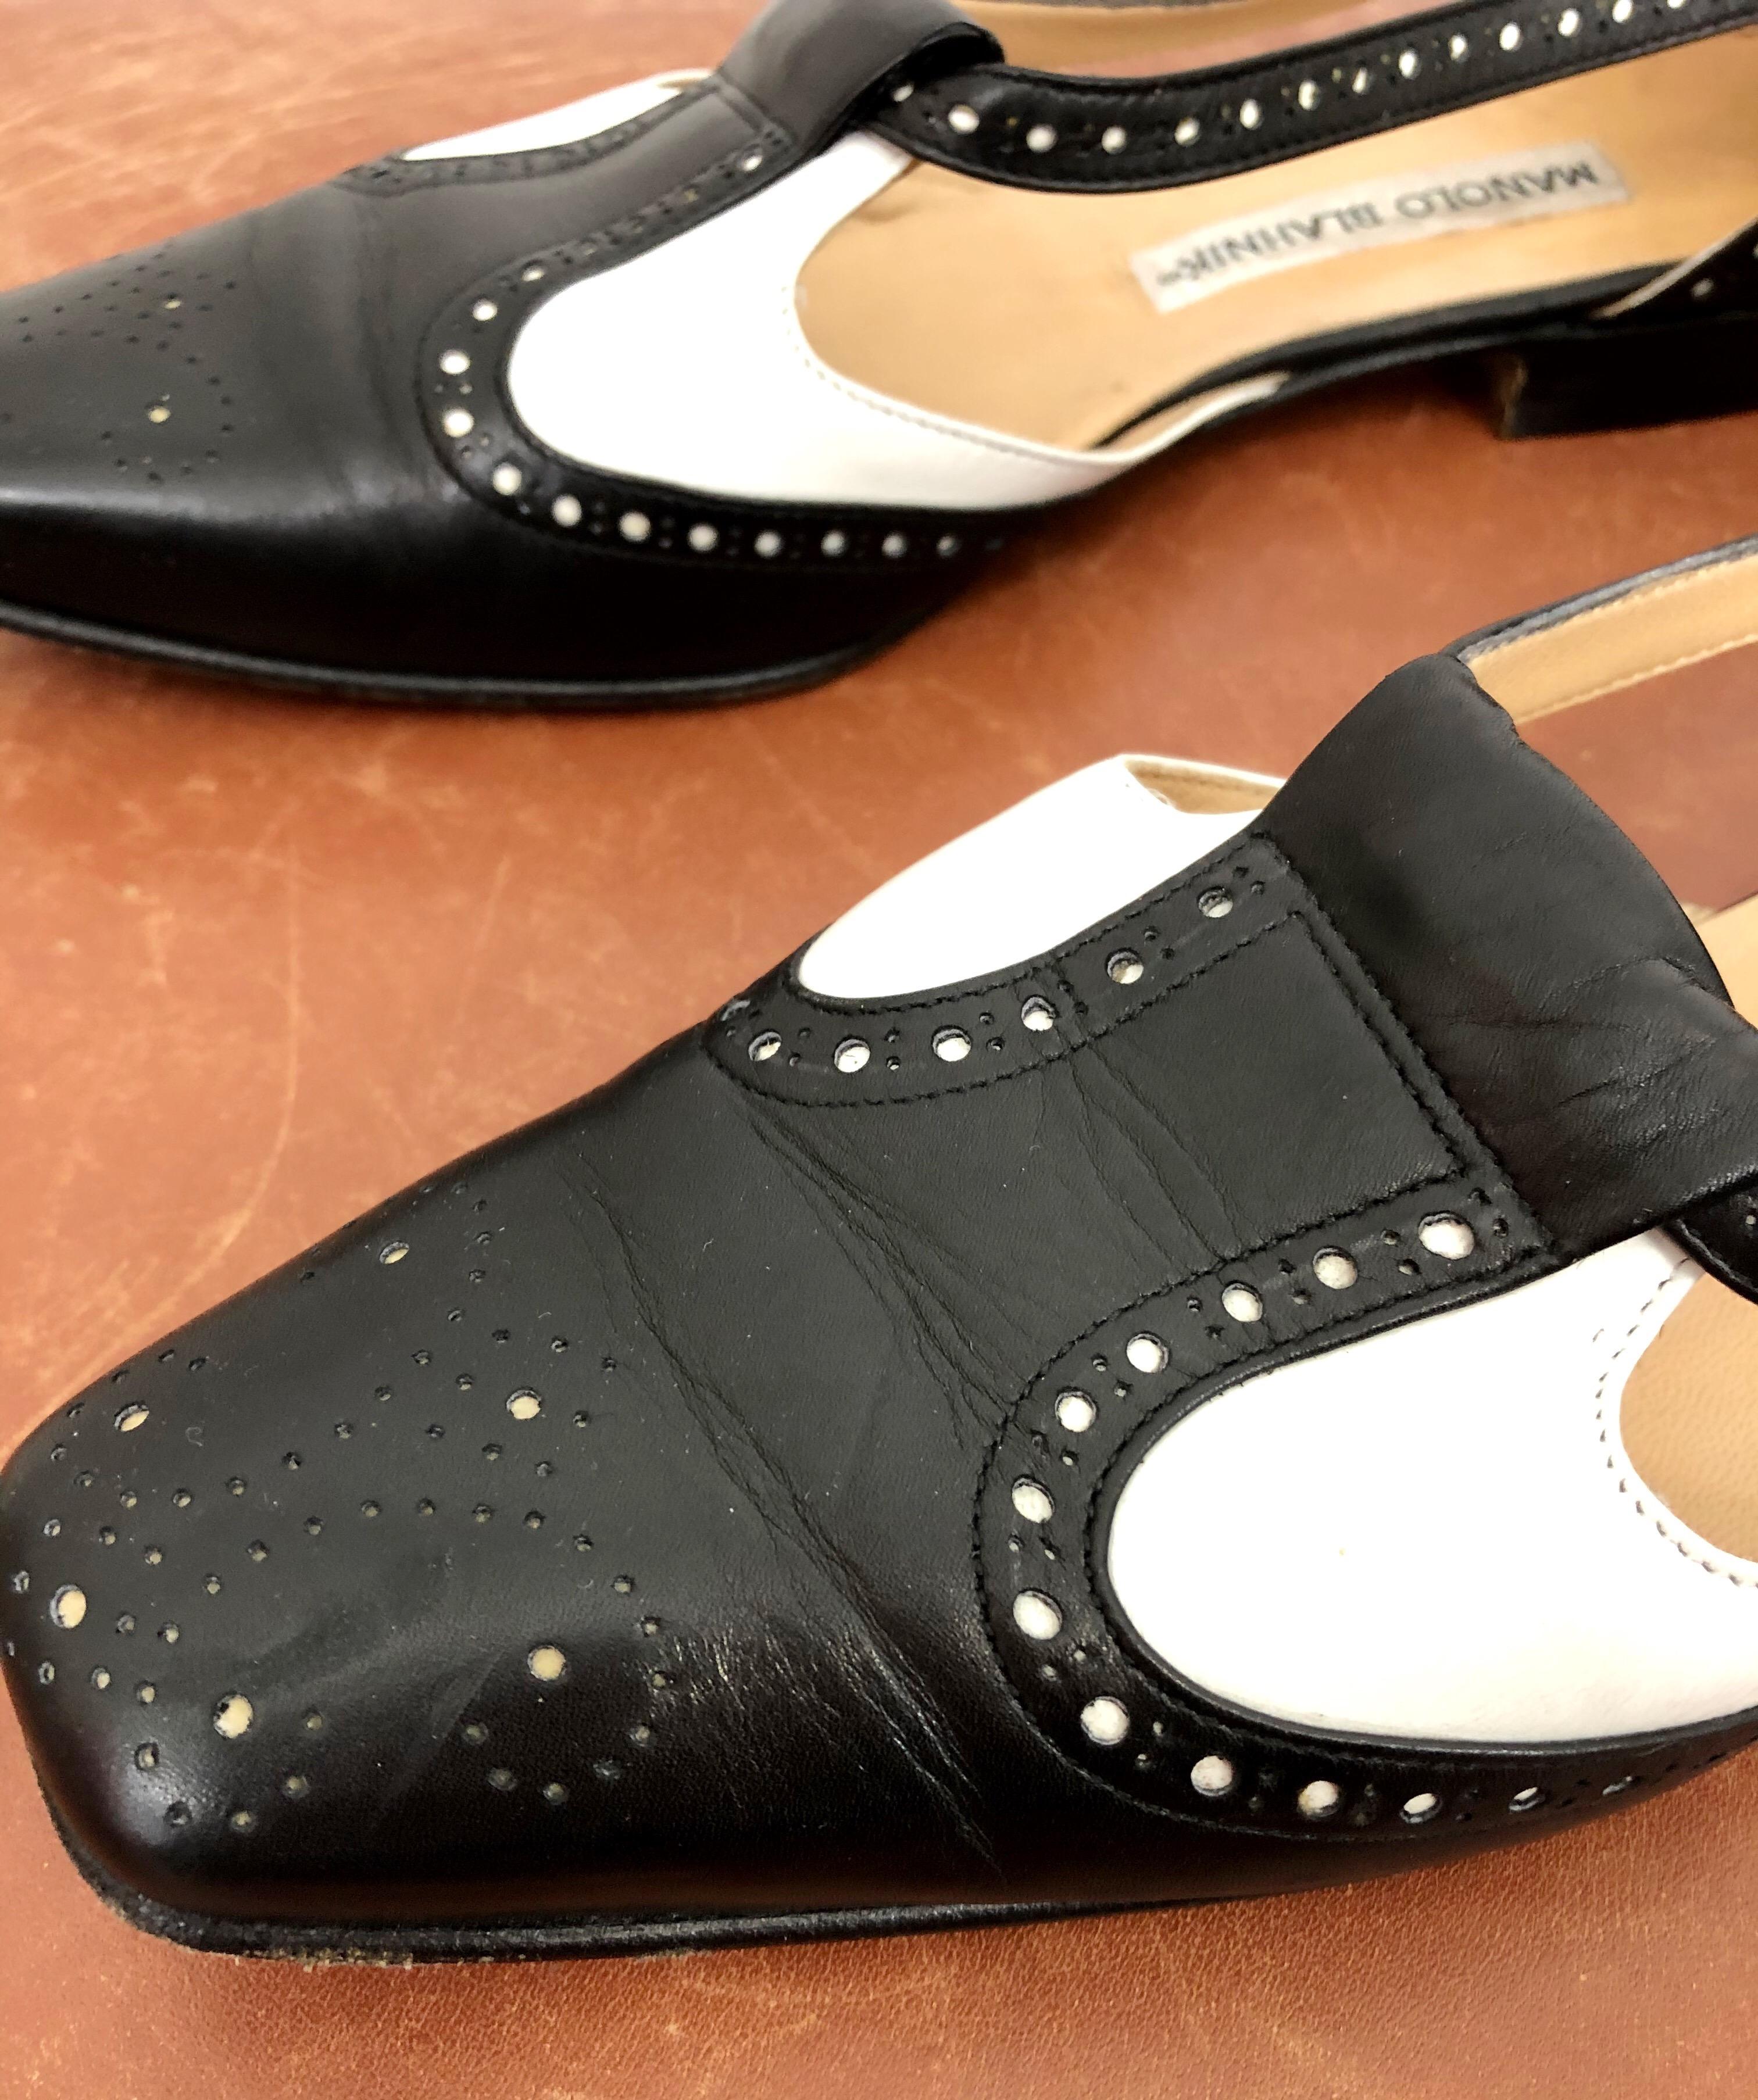 Schicke Vintage 1990s / 90s MANOLO BLAHNIK Größe 38.5 / 8.5 schwarz-weißer Spectator Cut-Out Leder Flats! Seltenes Frühwerk des Schuhgenies! Passt gut zu Jeans, Rock, Hose, Shorts oder einem Kleid. In gutem Zustand
Hergestellt in Italien
Markierte